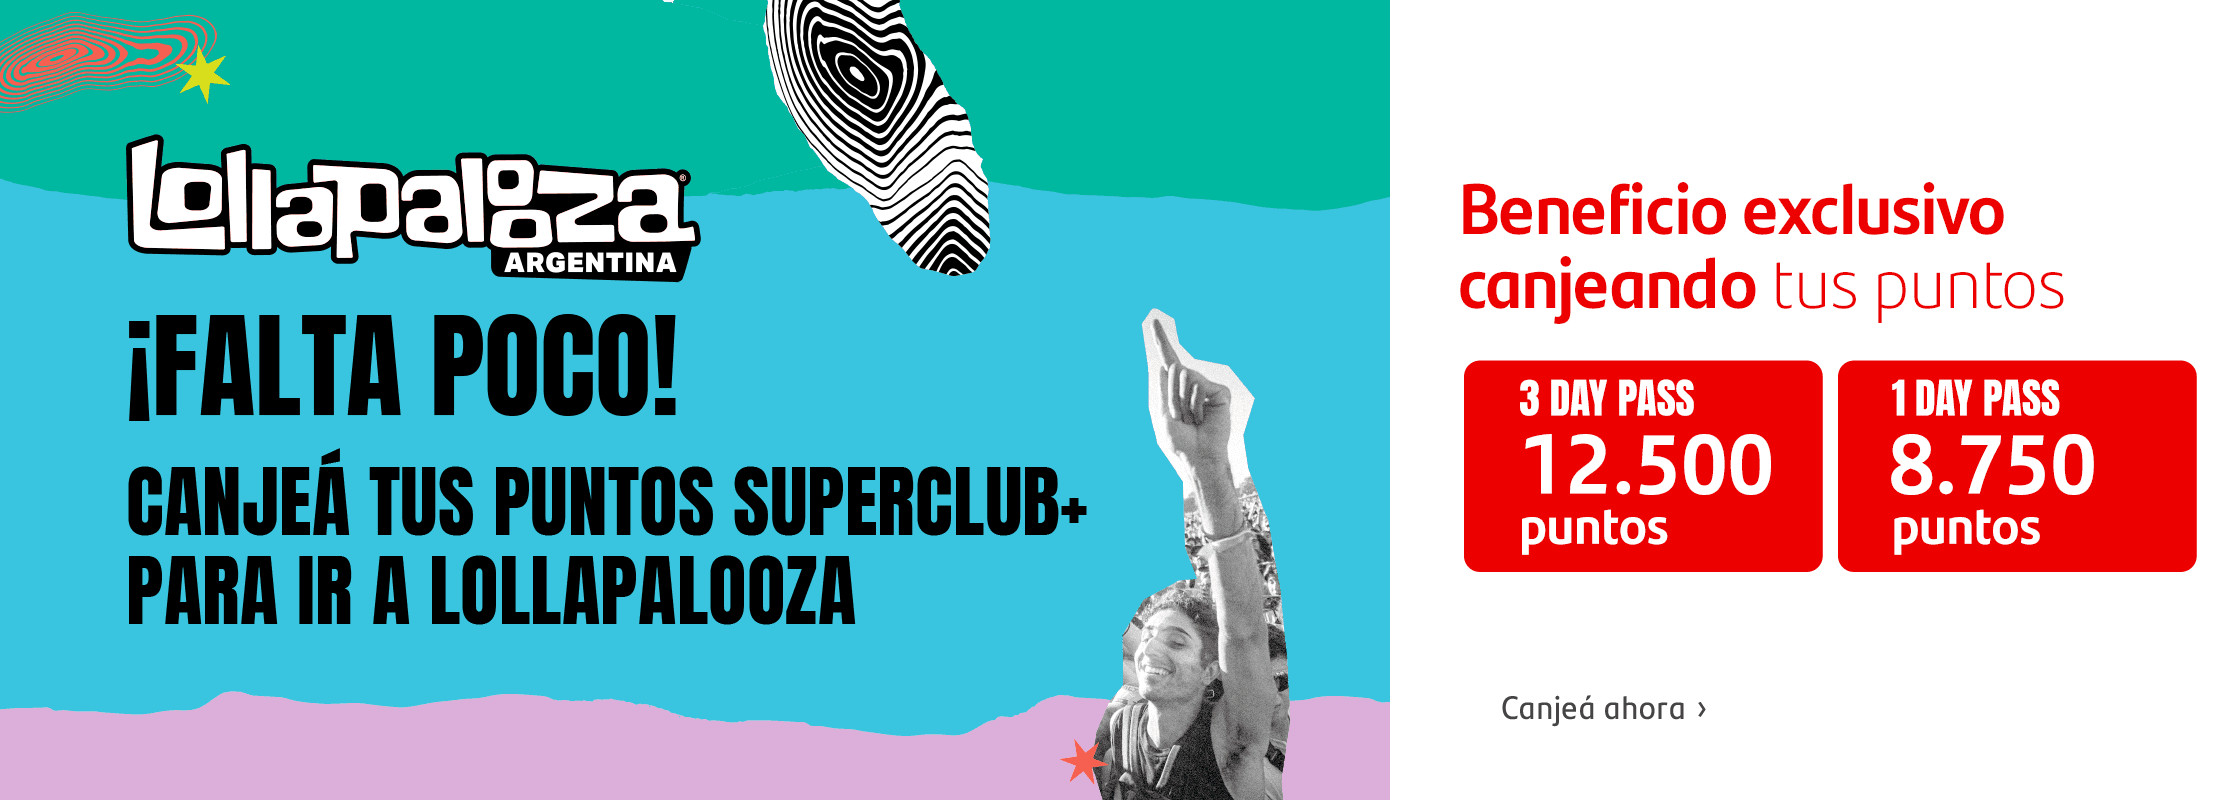 Lollapalooza - Beneficio exclusivo canjeando tus puntos SuperClub +